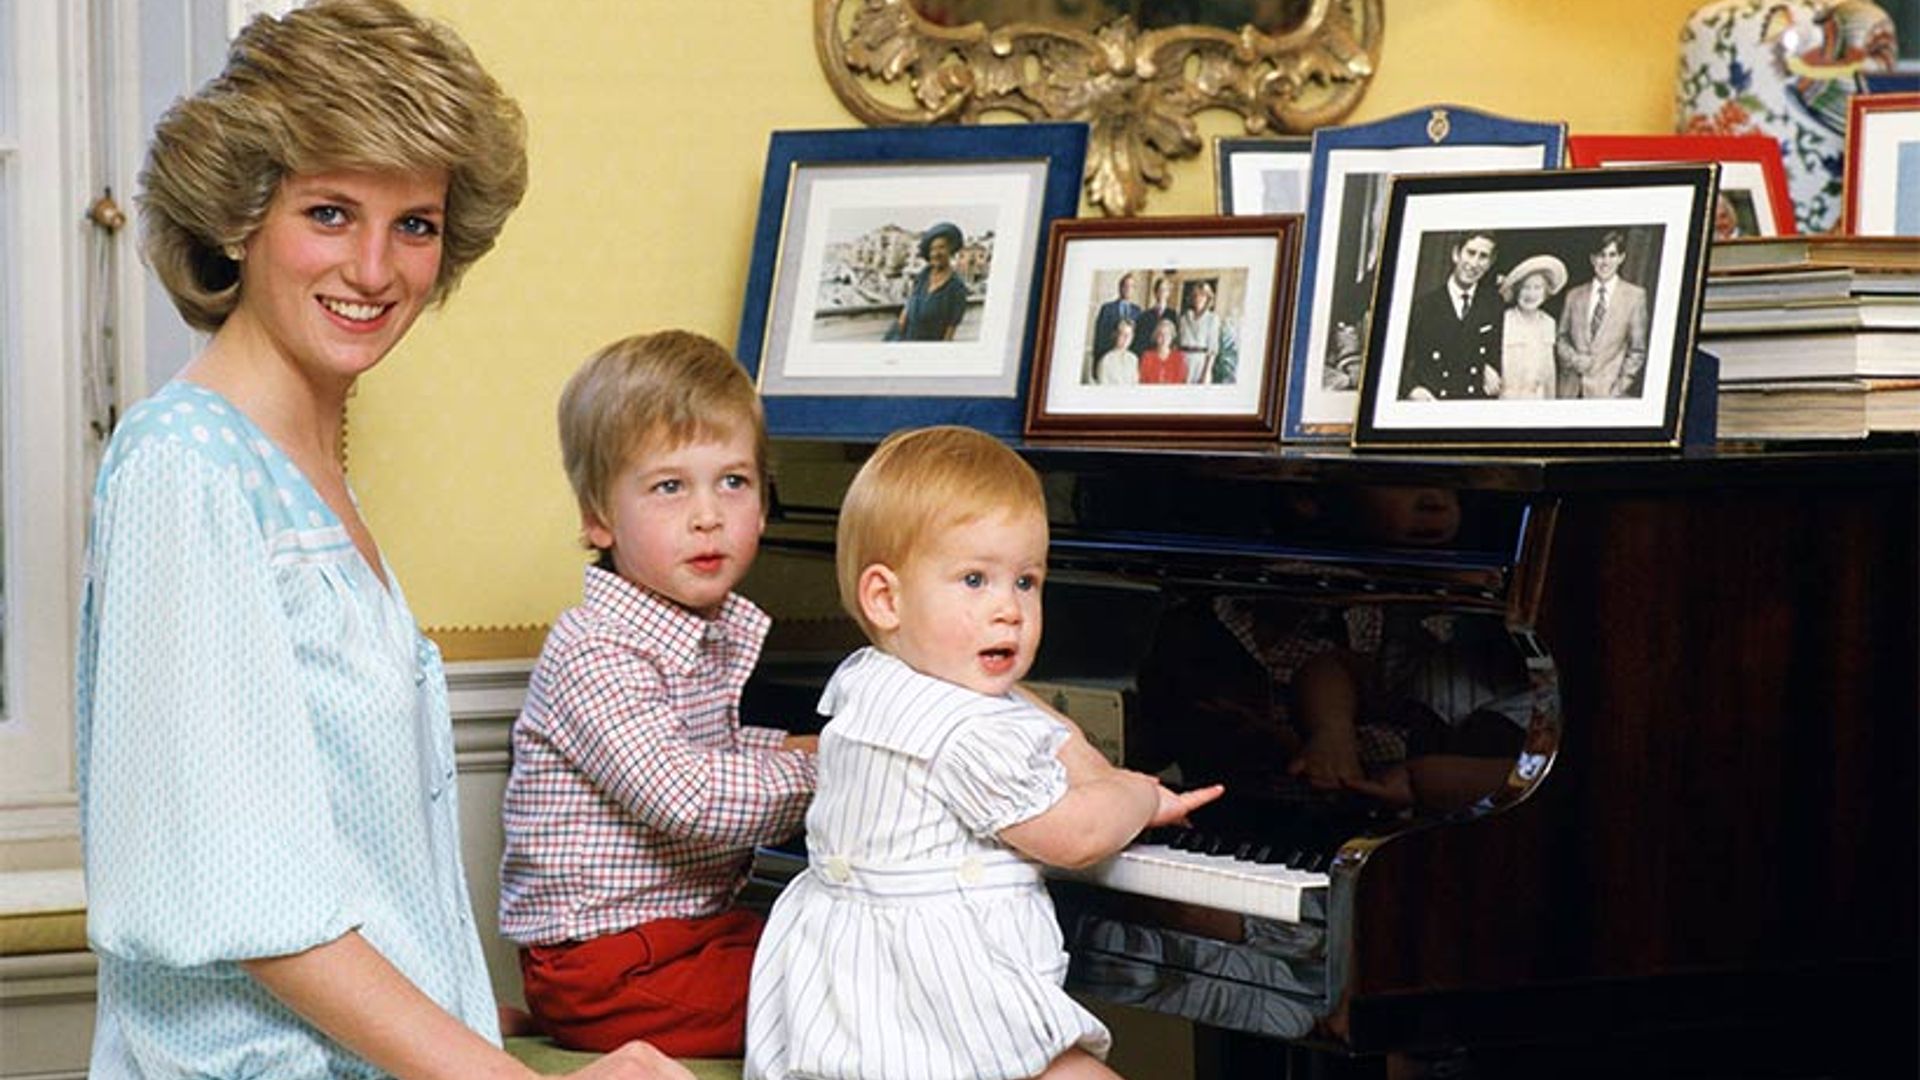 Inside Princess Diana's apartment at Kensington Palace